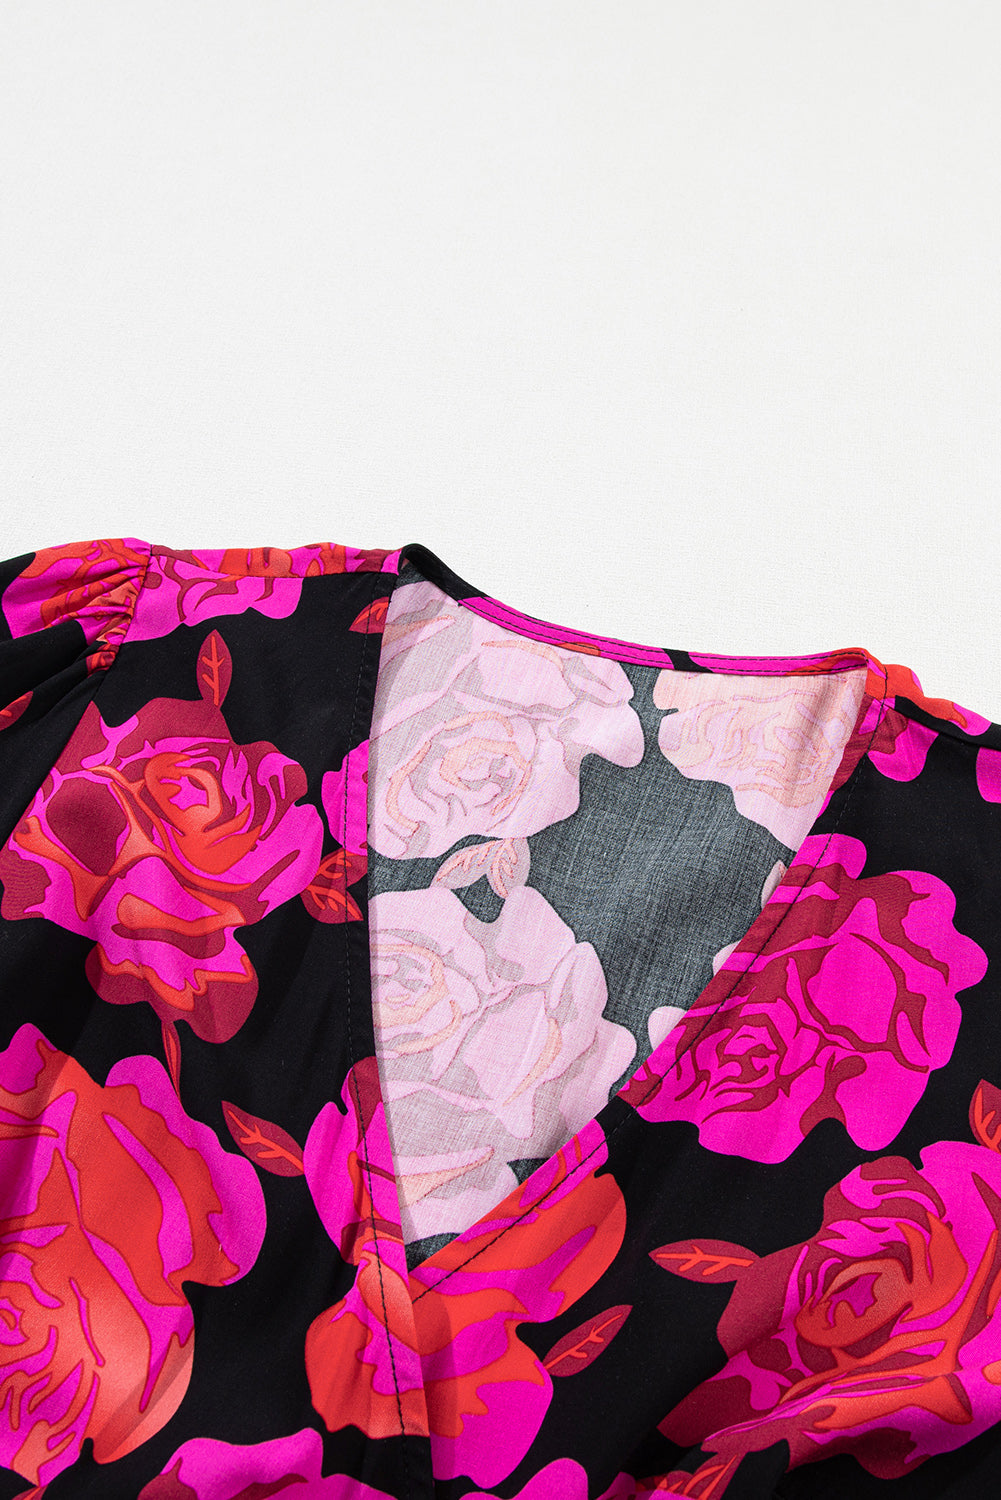 Gestuftes Minikleid mit Rosen-Blumendruck, V-Ausschnitt, Wickelärmeln und Rüschen